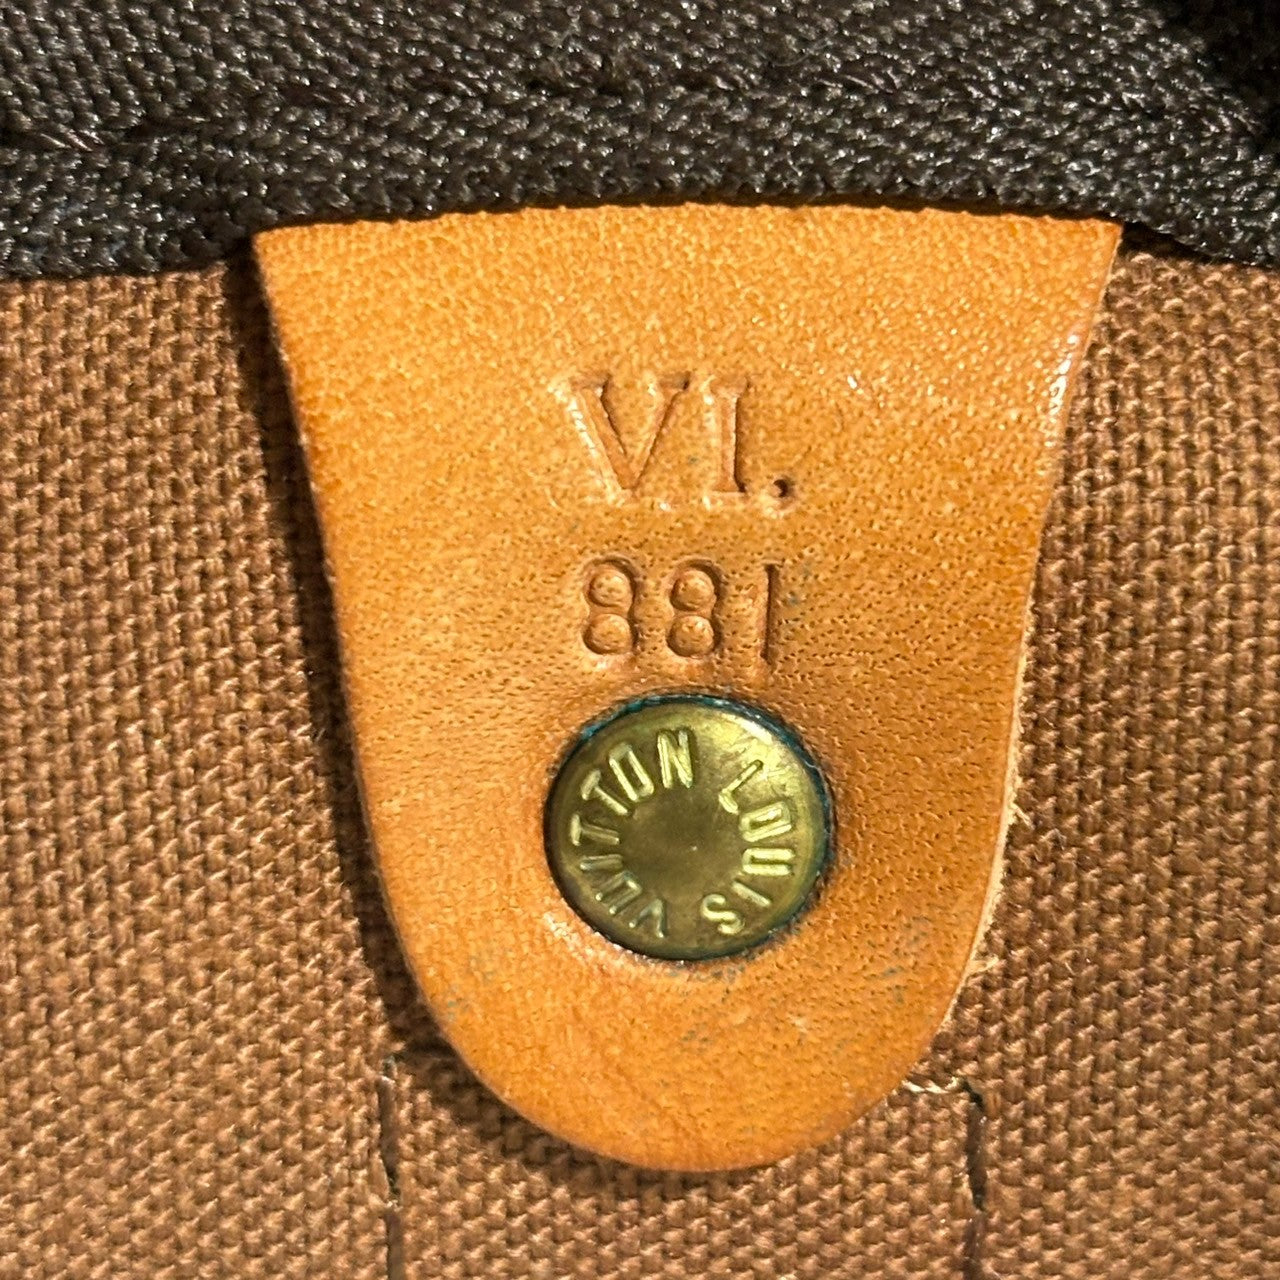 LOUIS VUITTON(ルイヴィトン) 80's keepall 50 キーポル 50 M41416 ブラウン モノグラム ボストンバッグ 旅行鞄 Vi881